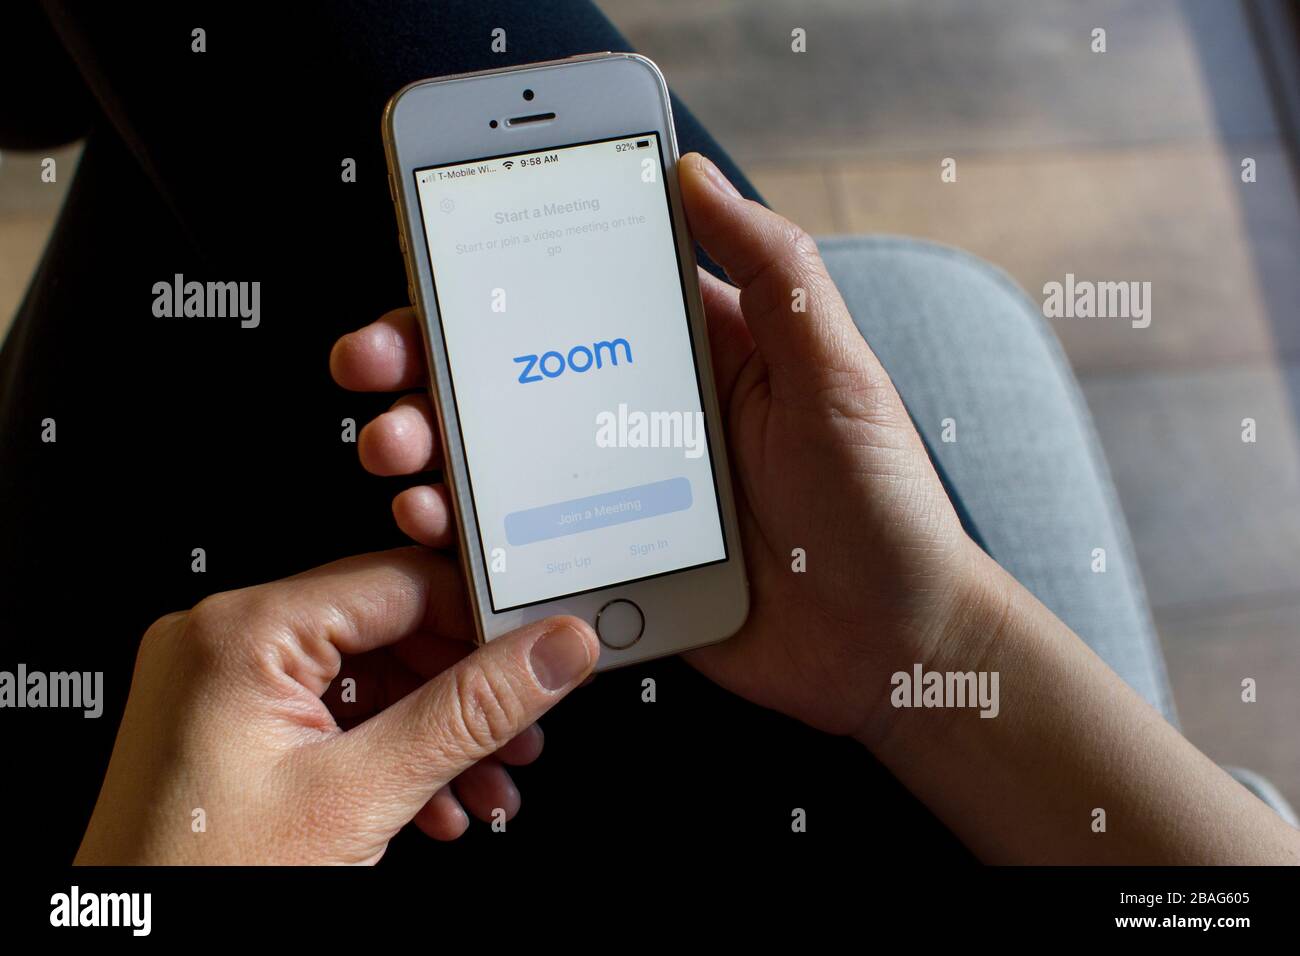 Eine Frau, die die Mobile-App "Zoom" auf ihrem Telefon öffnet. Zoom-Benutzer können Sitzungen aufzeichnen, an Projekten zusammenarbeiten und Anmerkungen auf den Bildschirmen der anderen Benutzer erstellen. Stockfoto